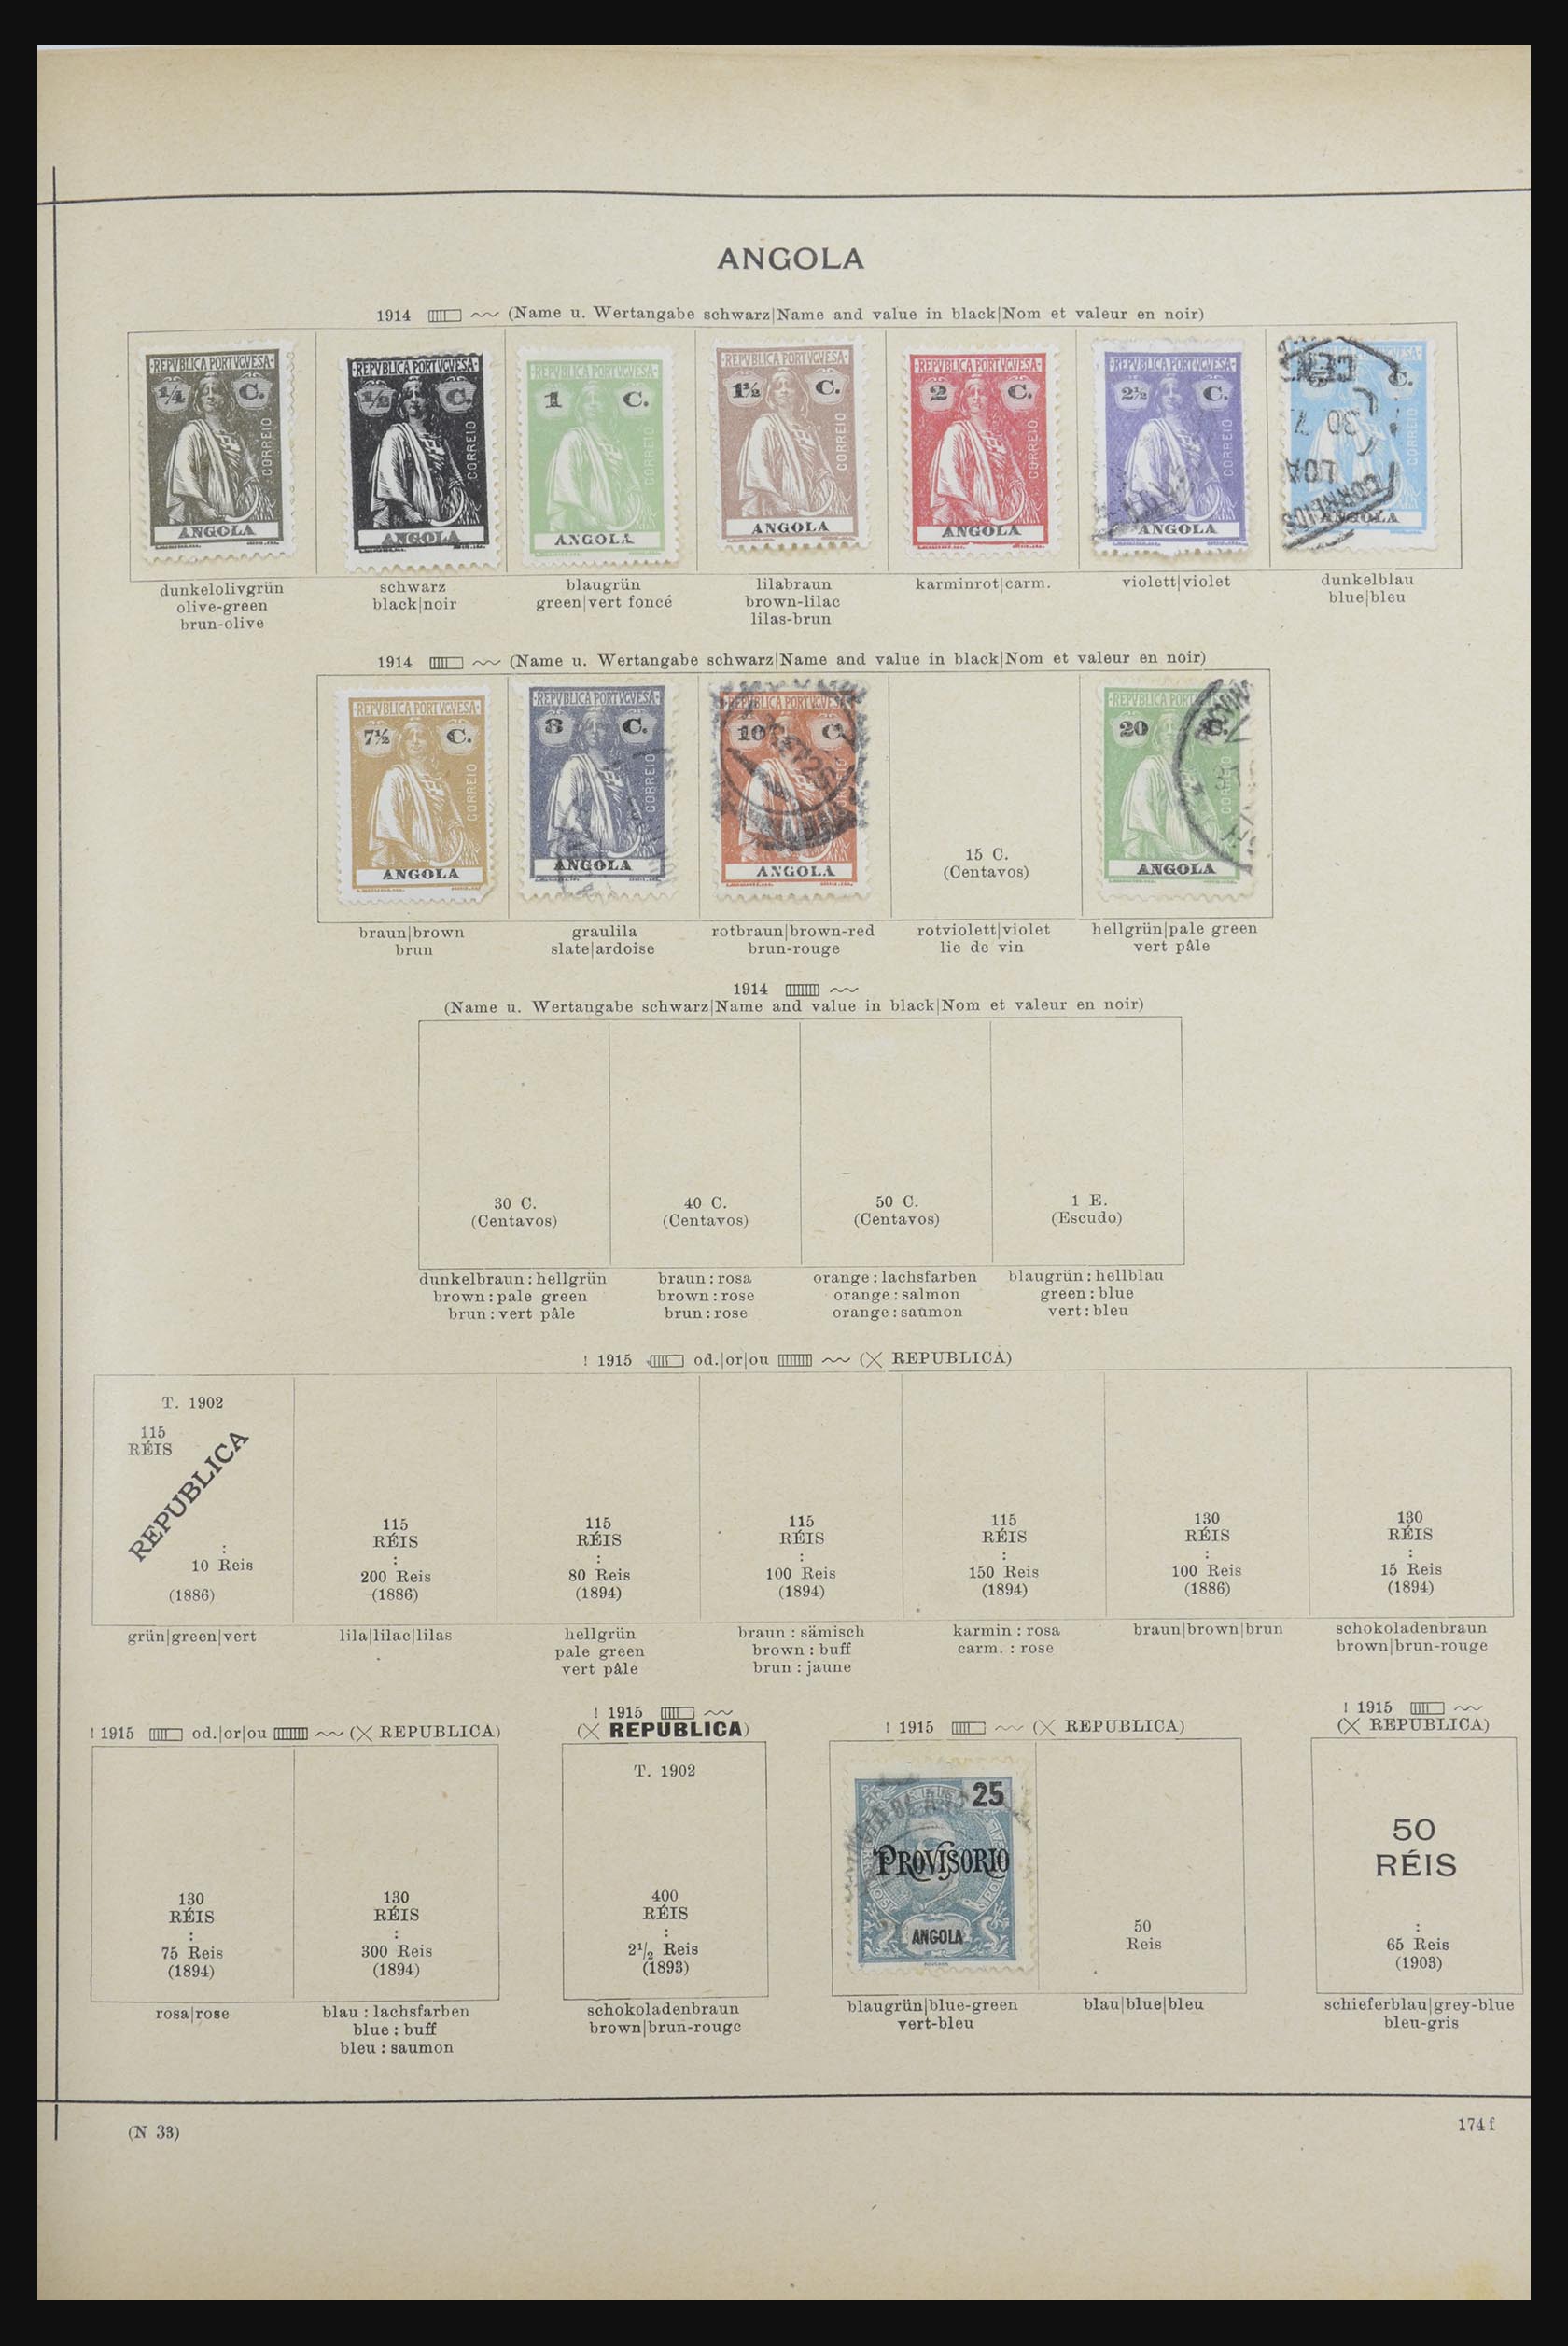 32070 051 - 32070 Portugal en koloniën 1857-1953.